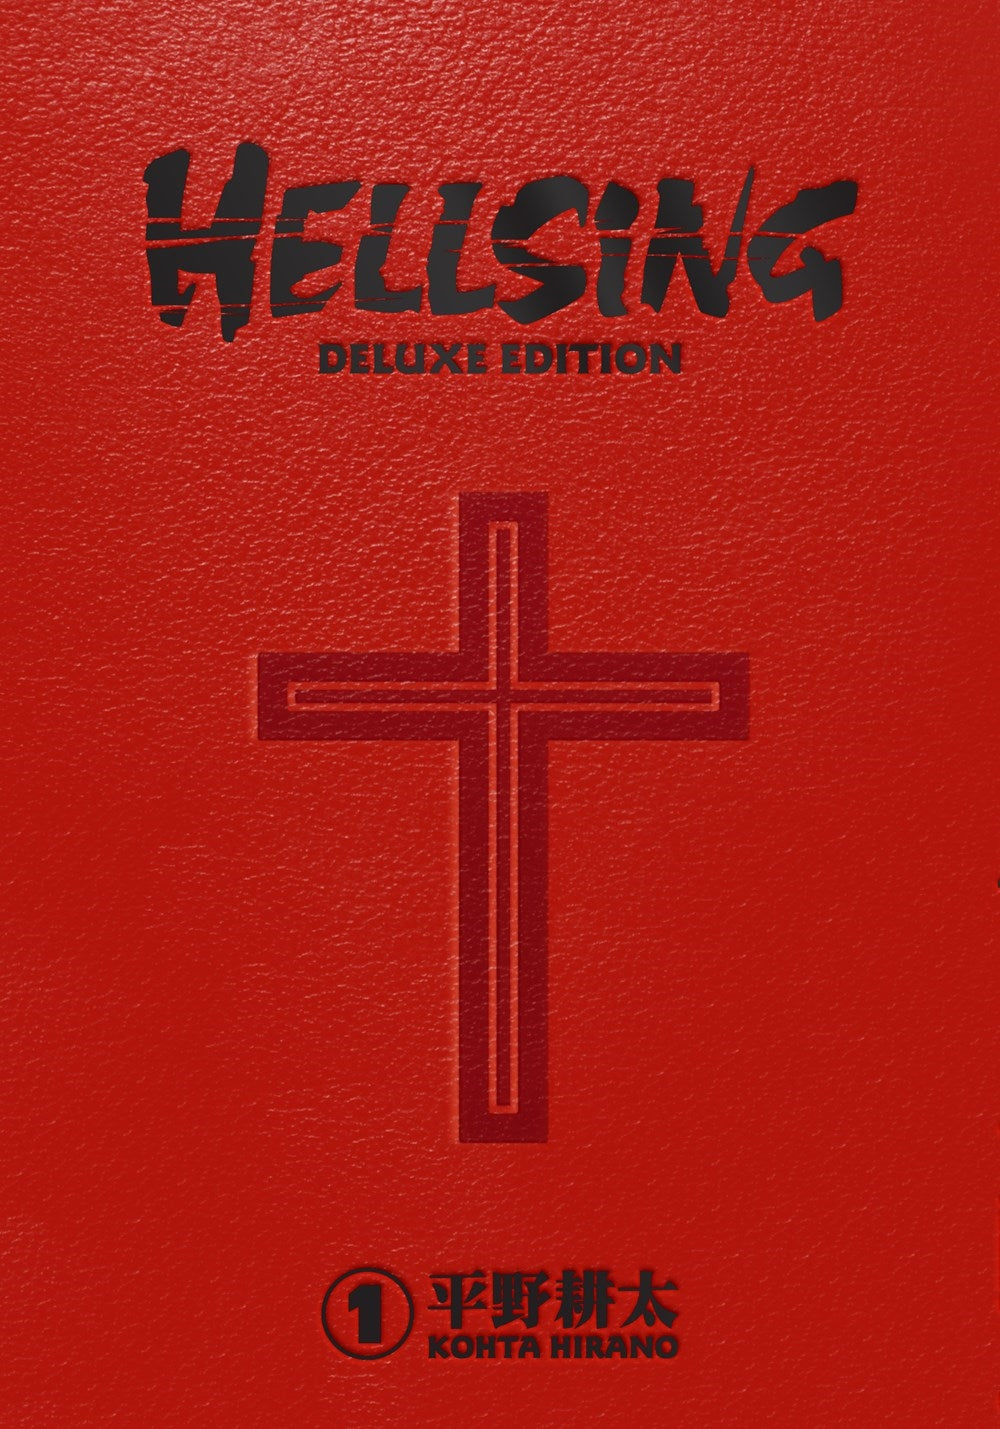 Hellsing Deluxe - Volume 1